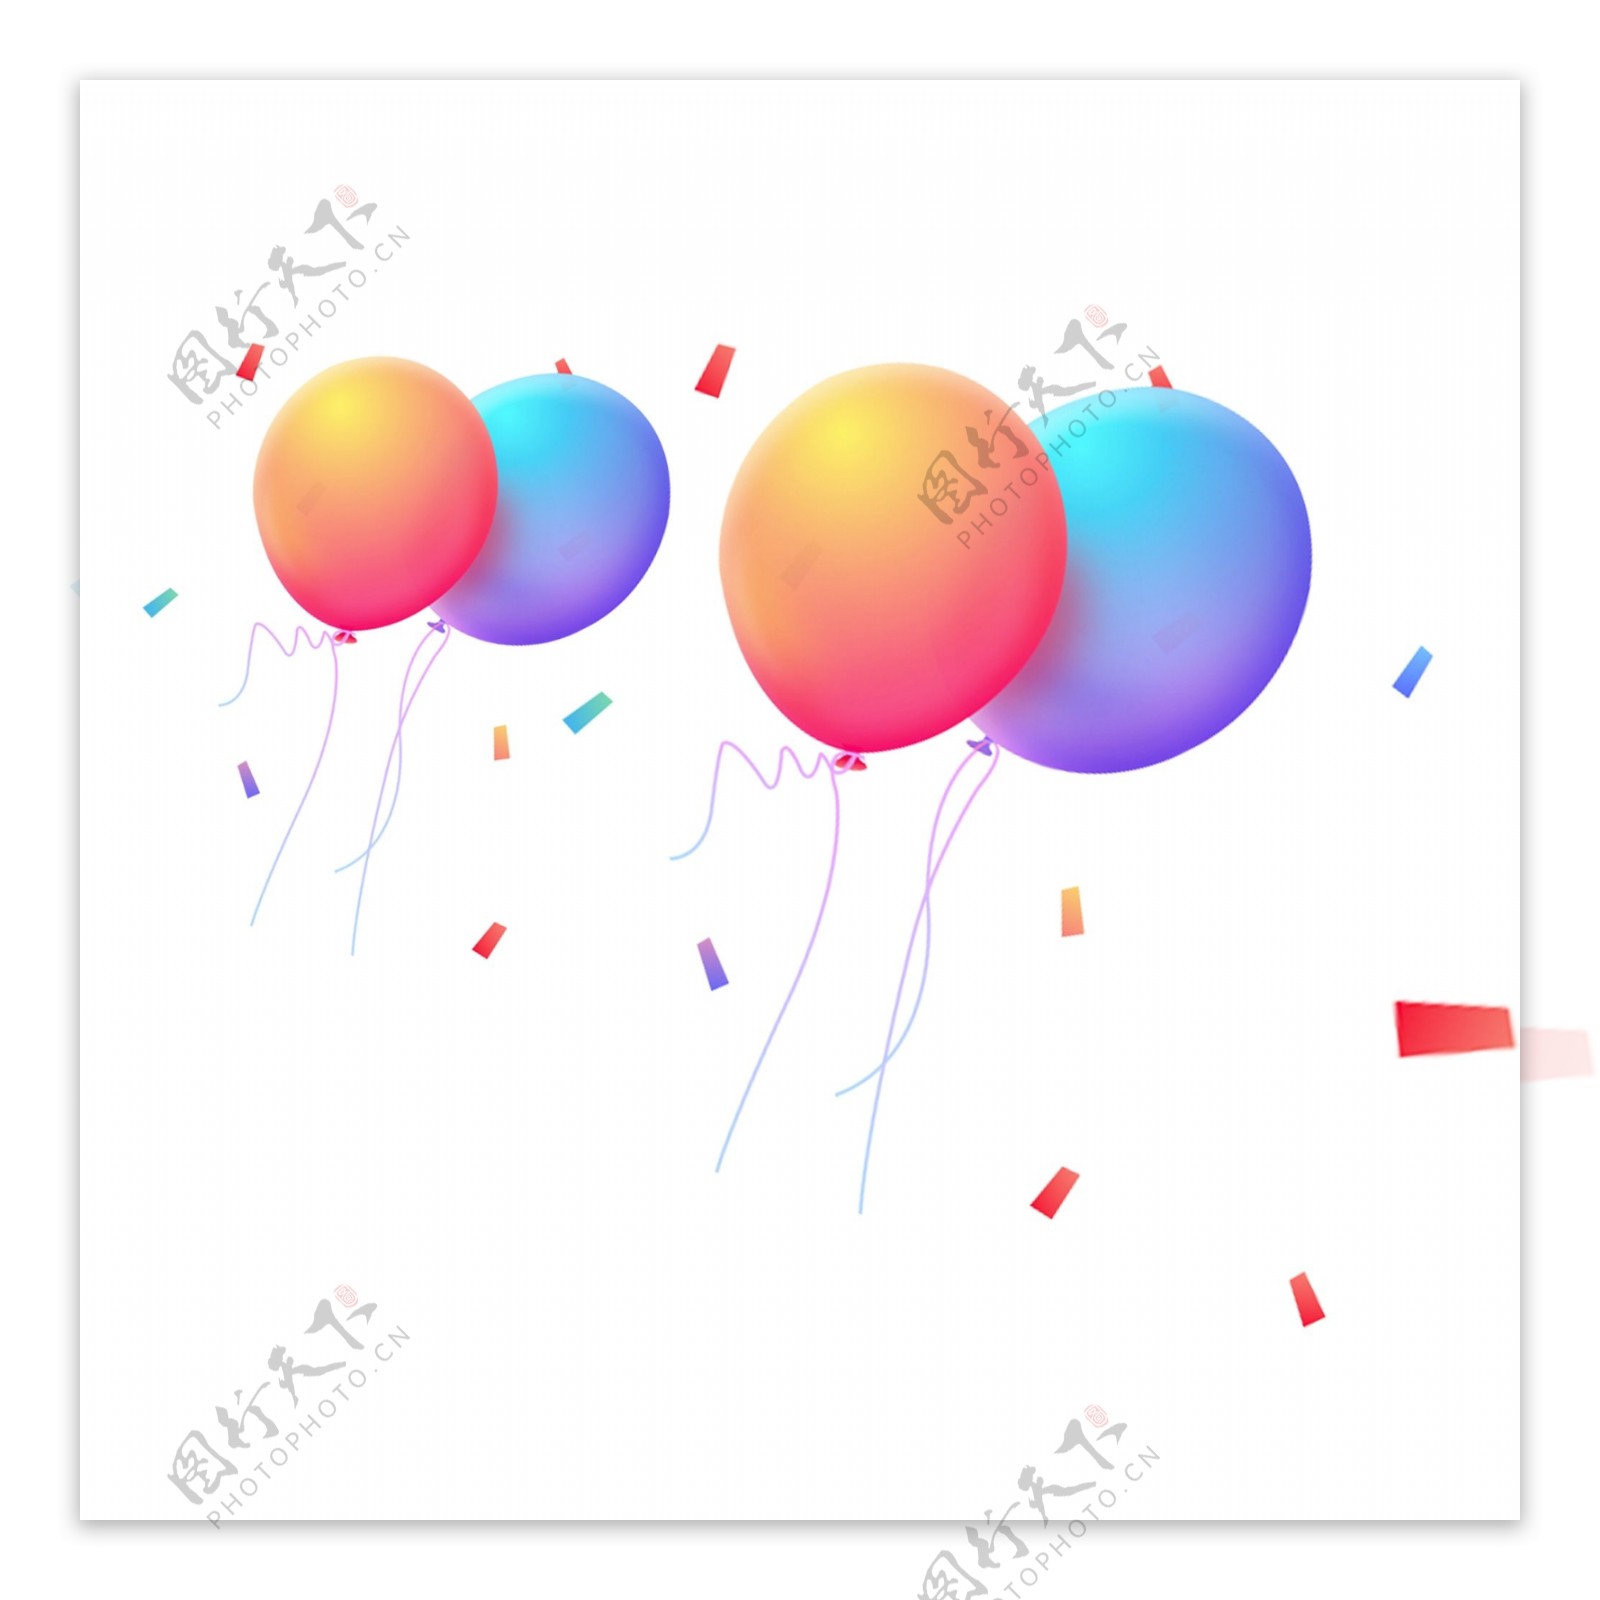 清新彩色气球装饰元素